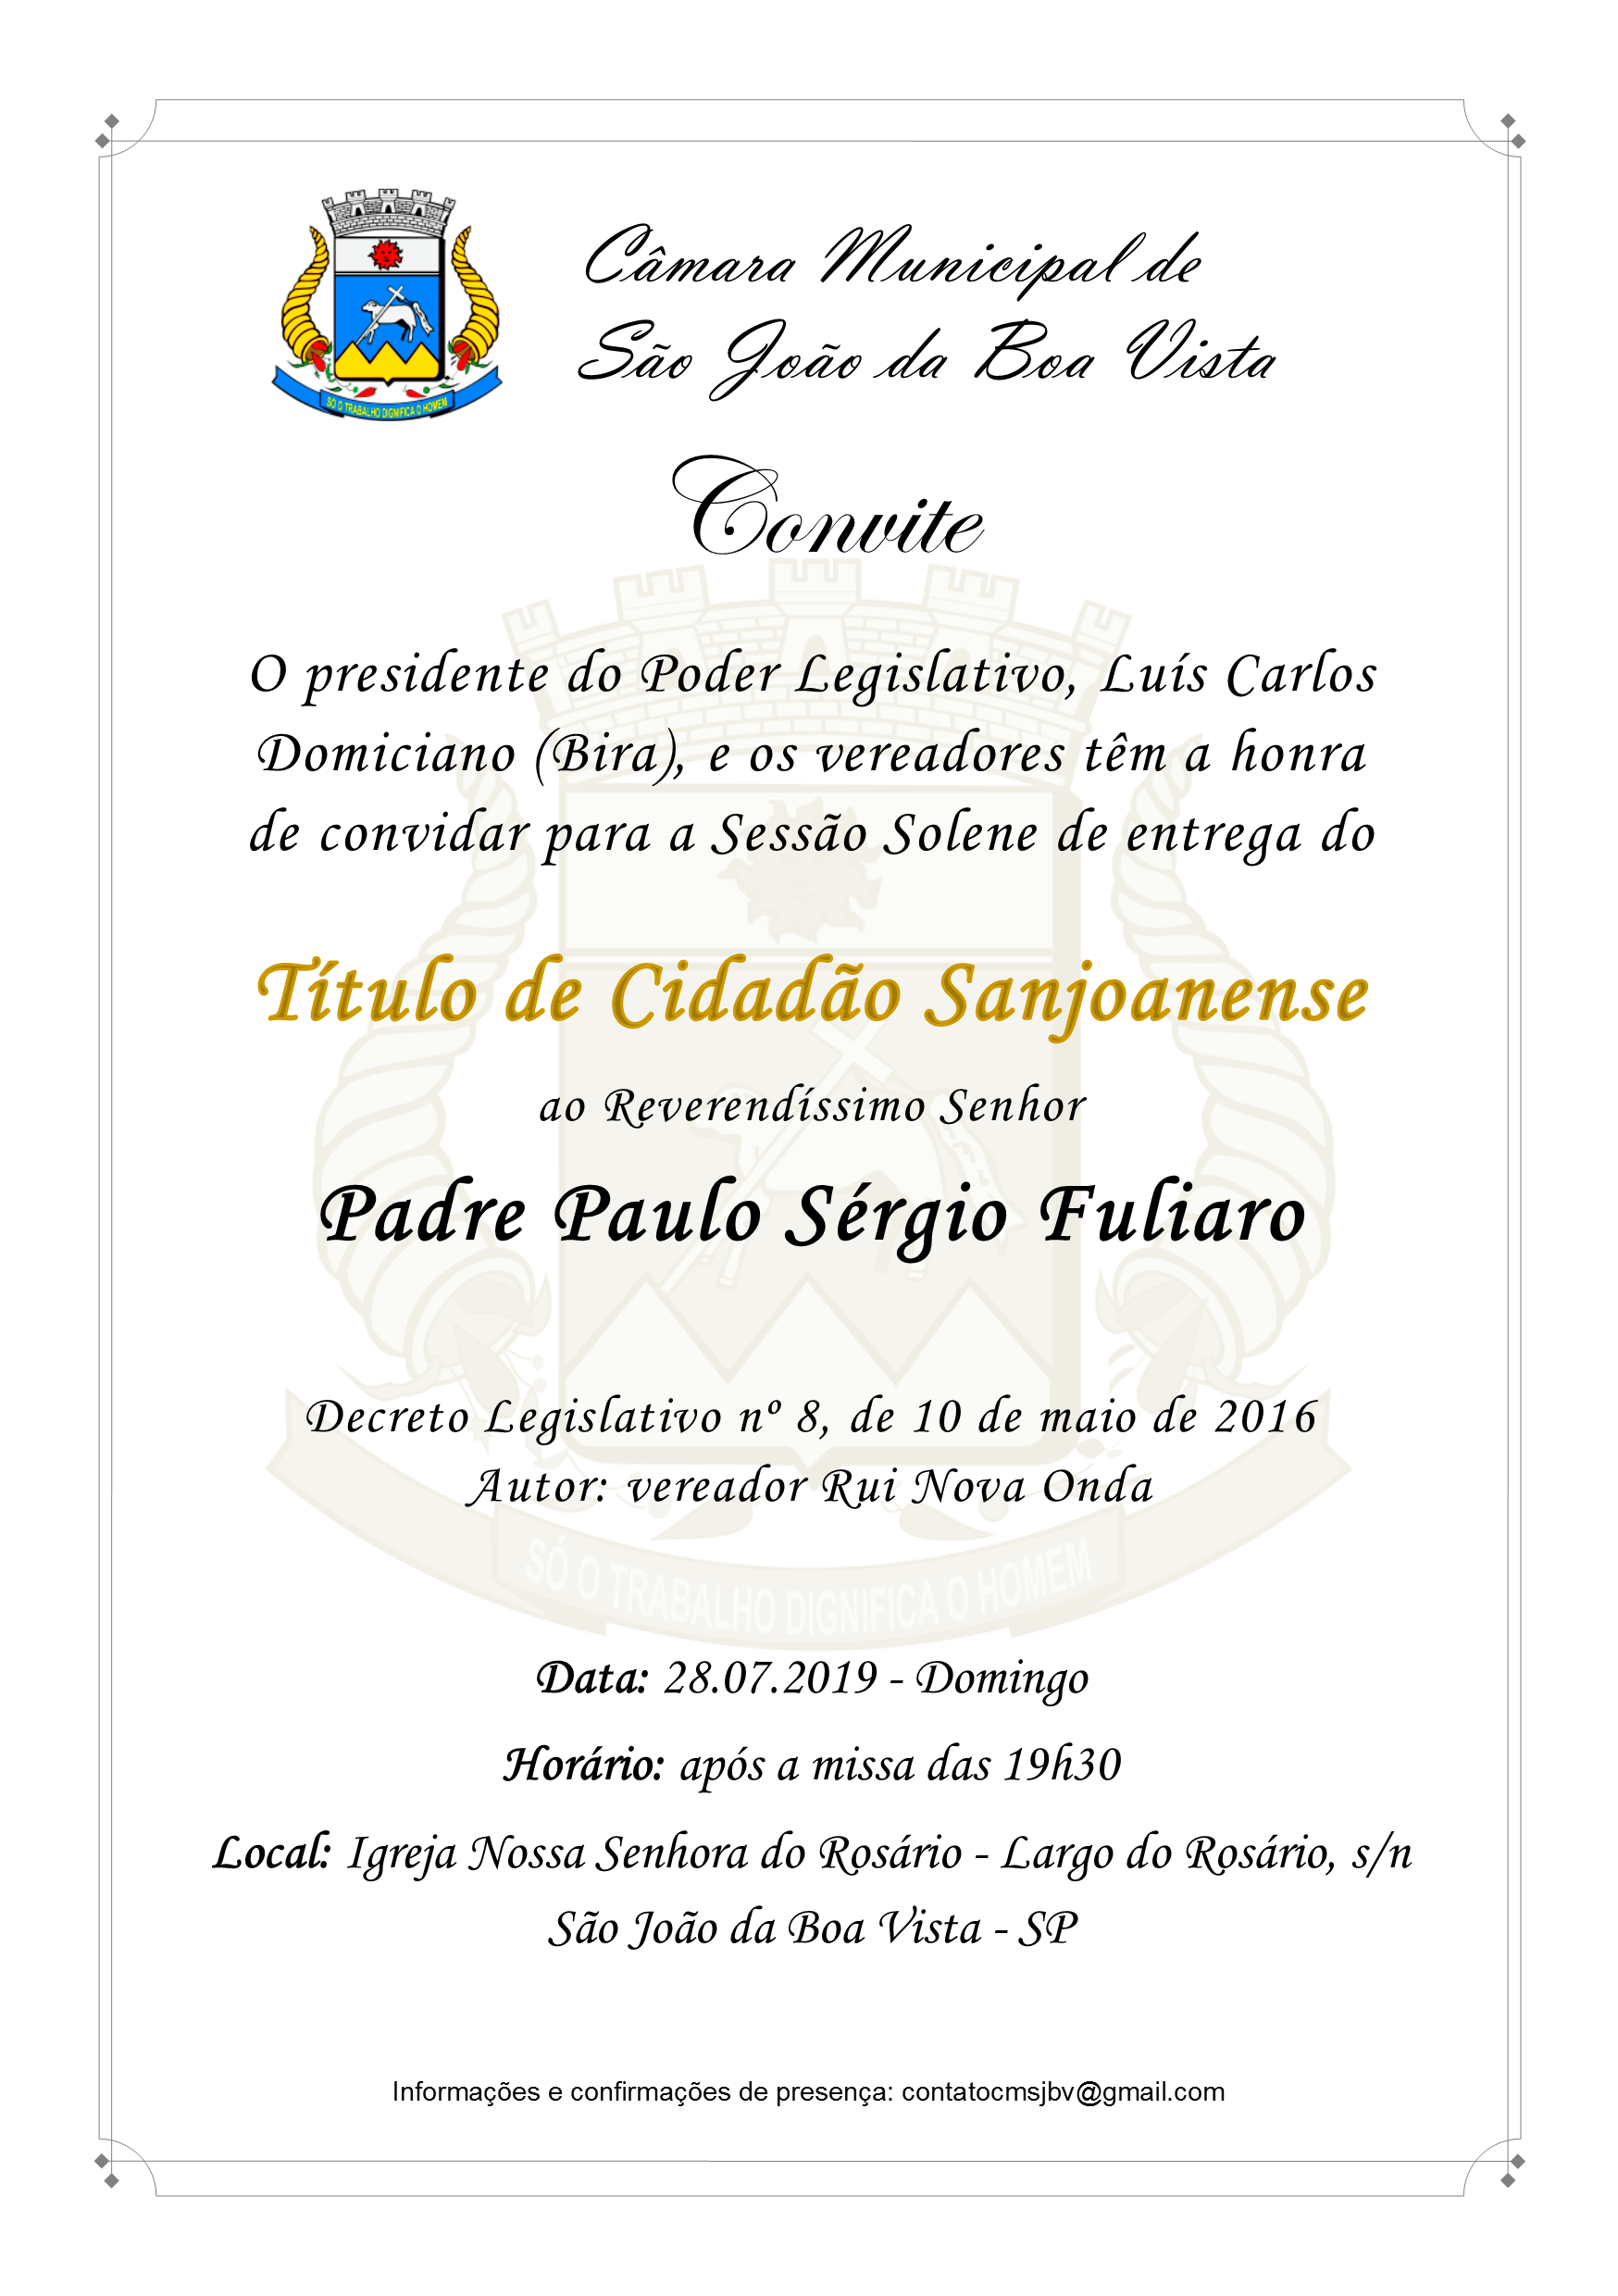 Legislativo convida para Sessão Solene de concessão do Título de Cidadão Sanjoanense ao padre Paulo Fuliaro